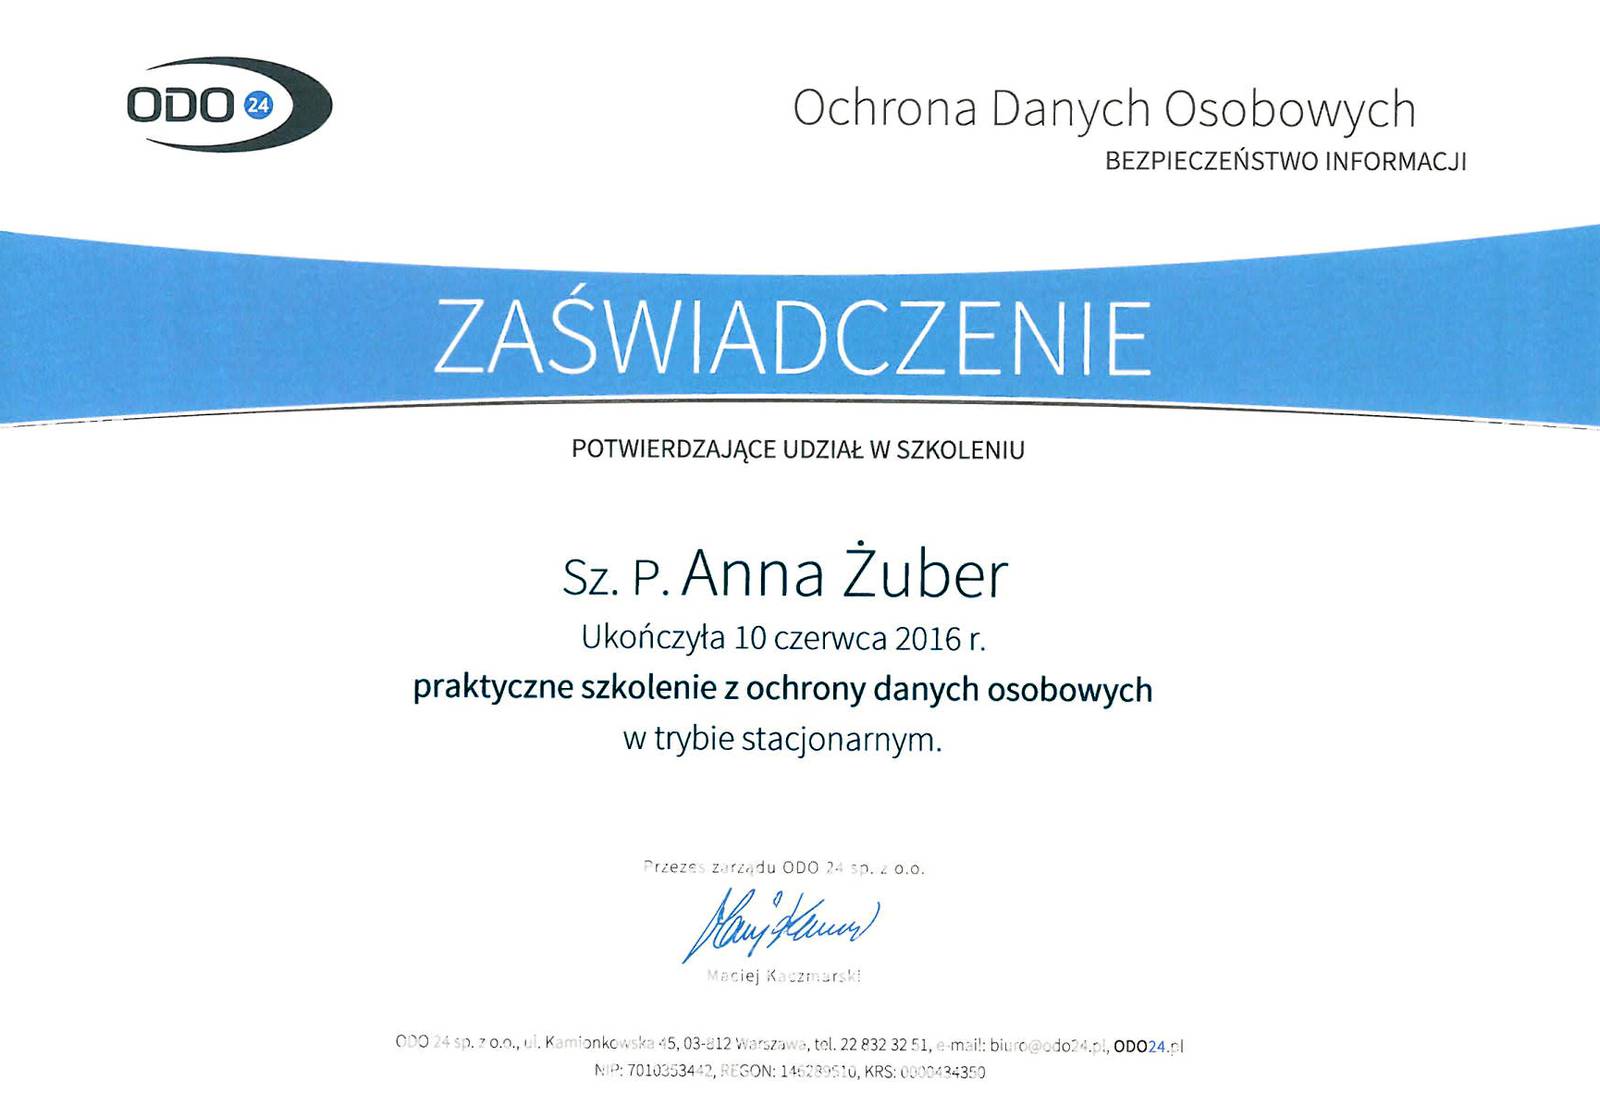 Zaświadczenie o ukończeniu szkolenia praktyczne szkolenie z ochrony danych osobowych Anna Żuber